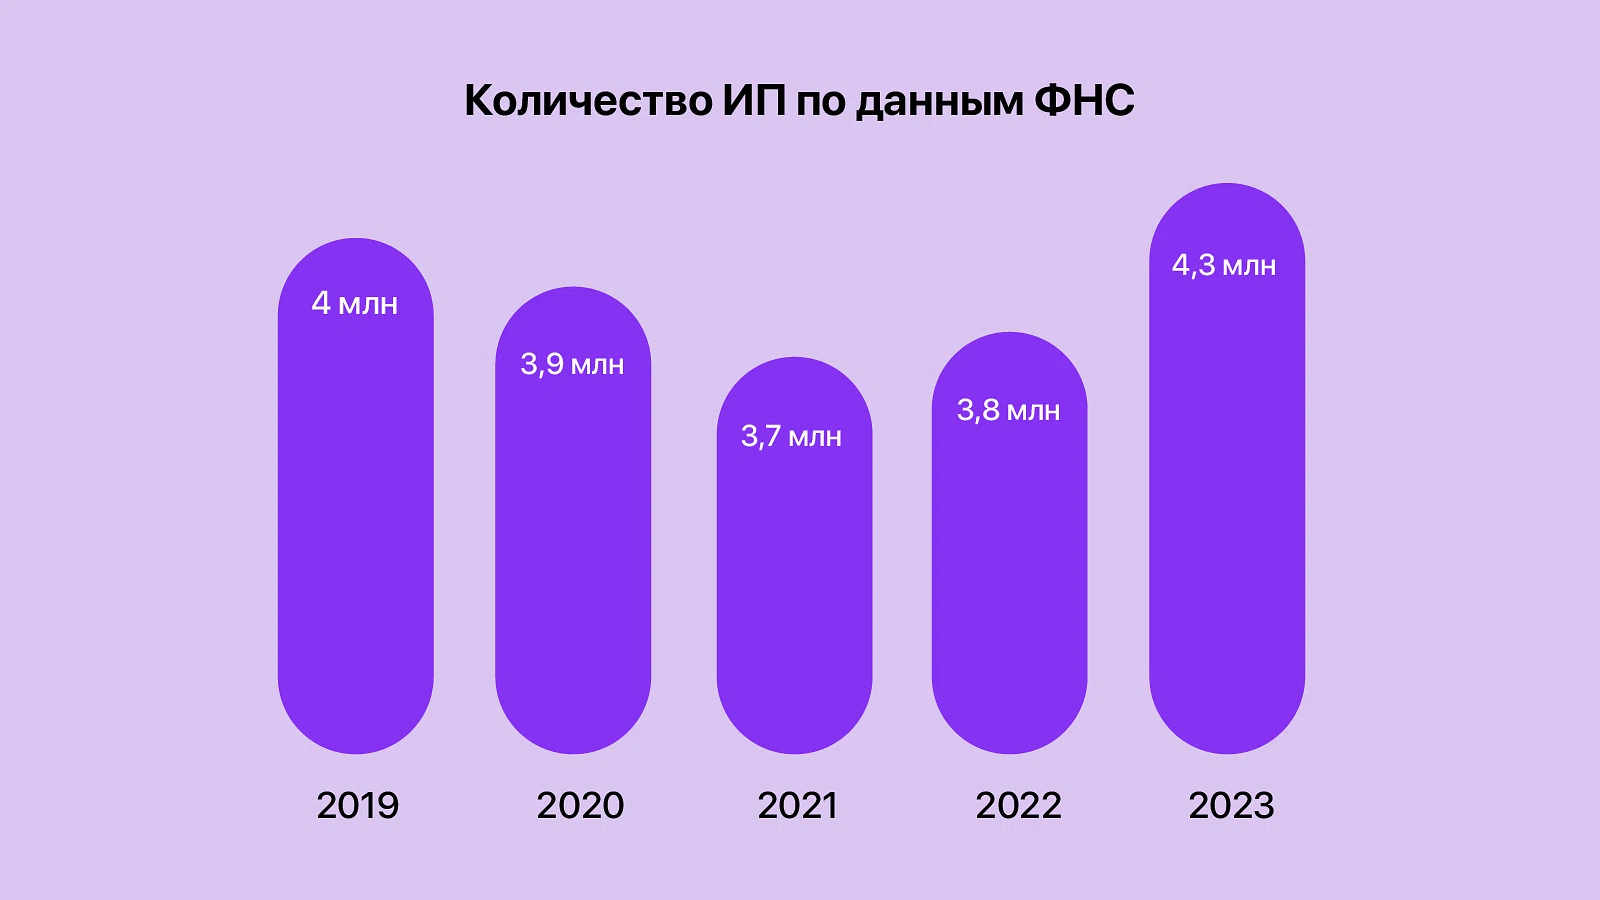 Число зарегистрированных ИП в России за 5 лет